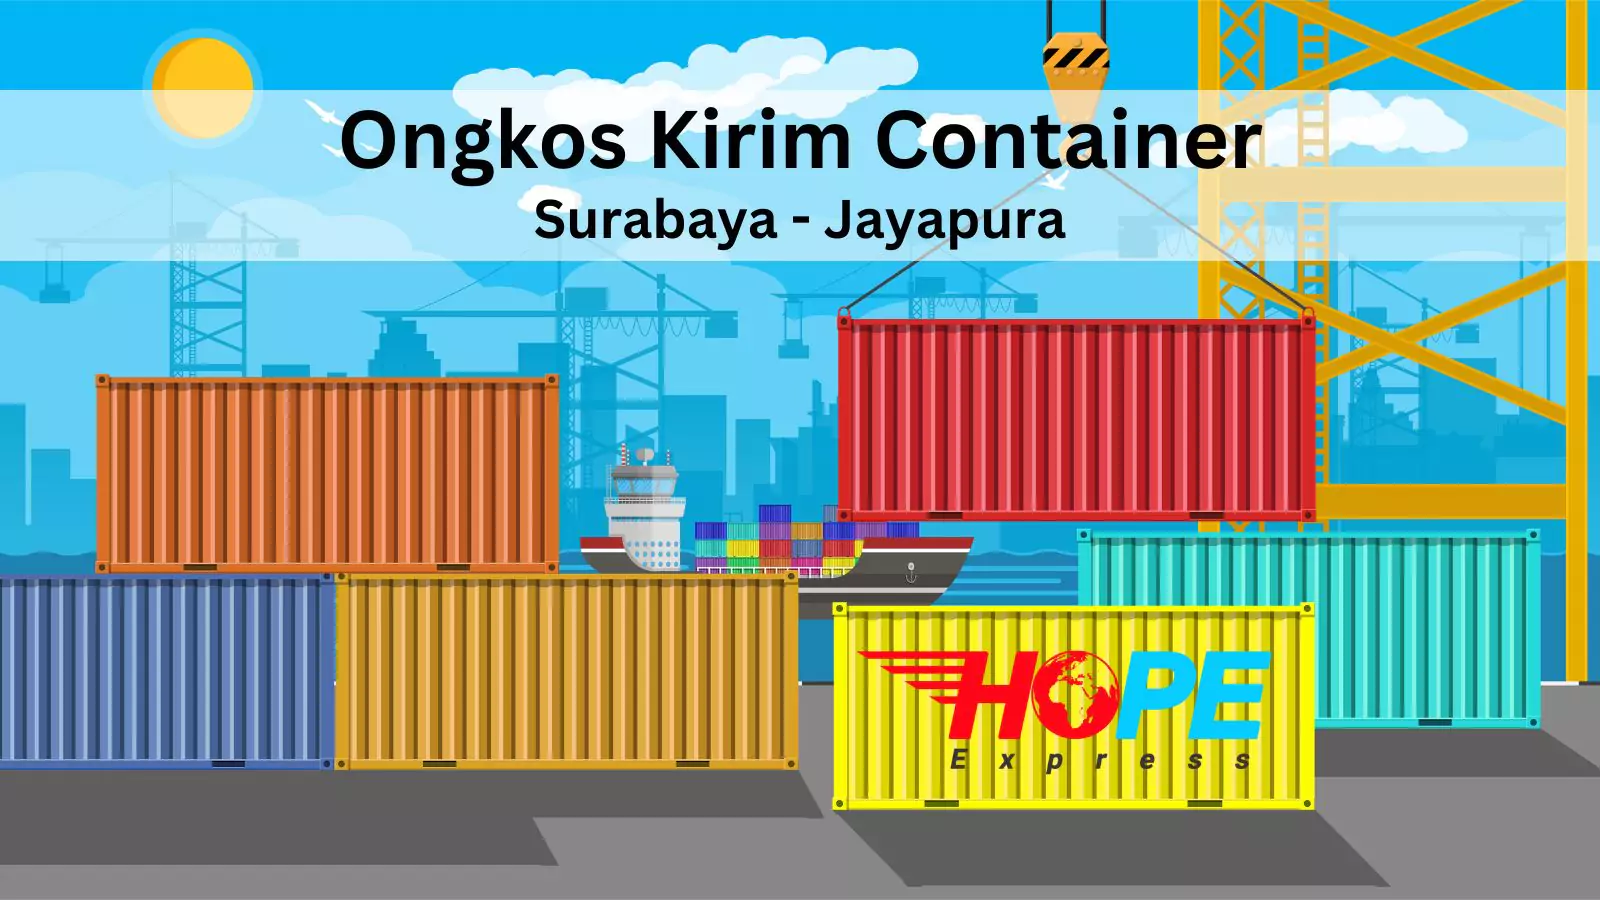 Ongkos Kirim Container Surabaya Jayapura